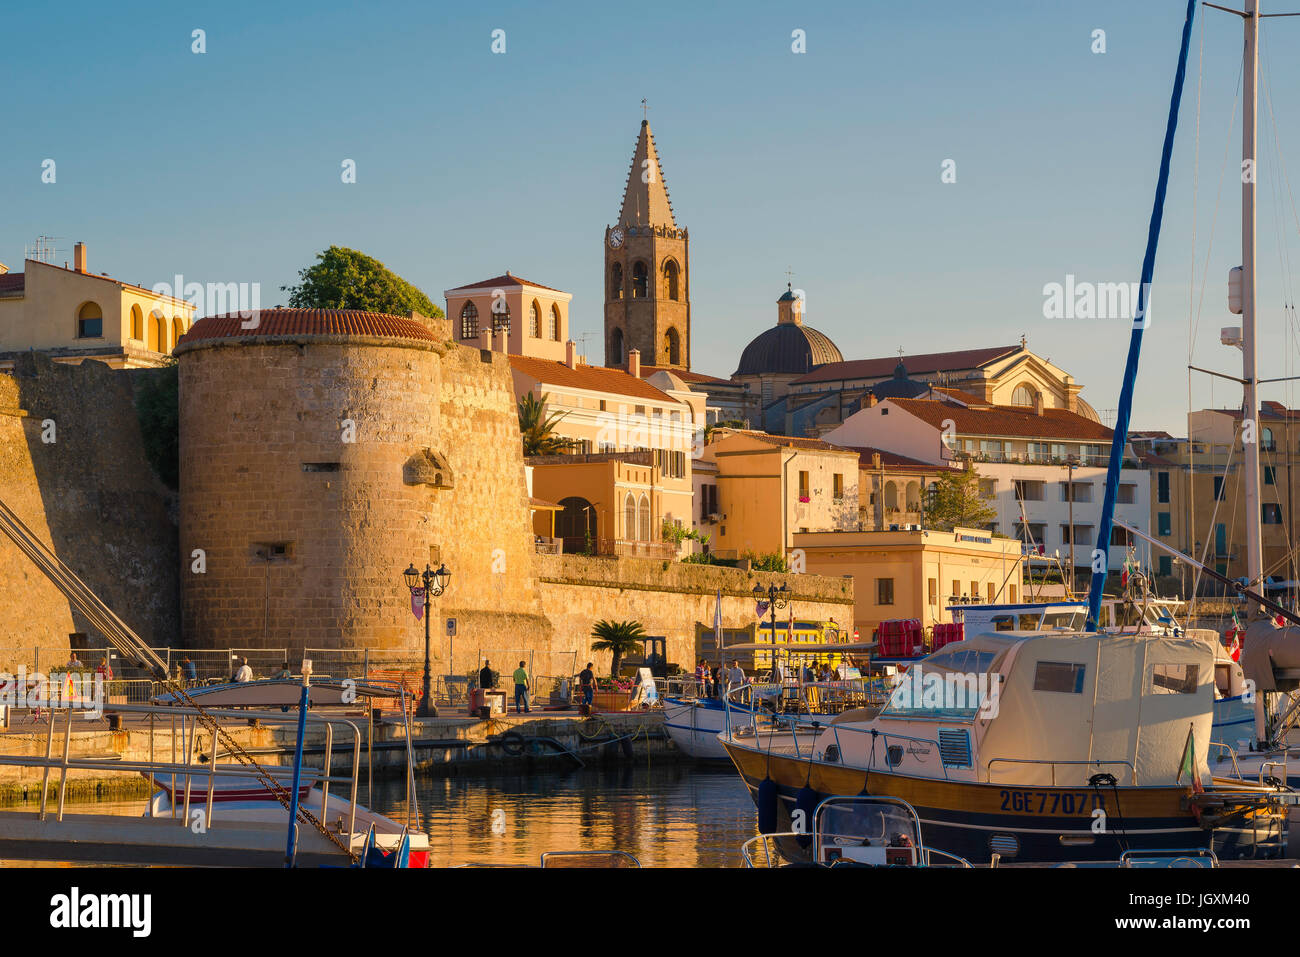 Alghero Sardegna, vista delle mura medievali e la torre - Il Bastione della Maddalena - nella zona del porto di Alghero, Sardegna, Italia. Foto Stock